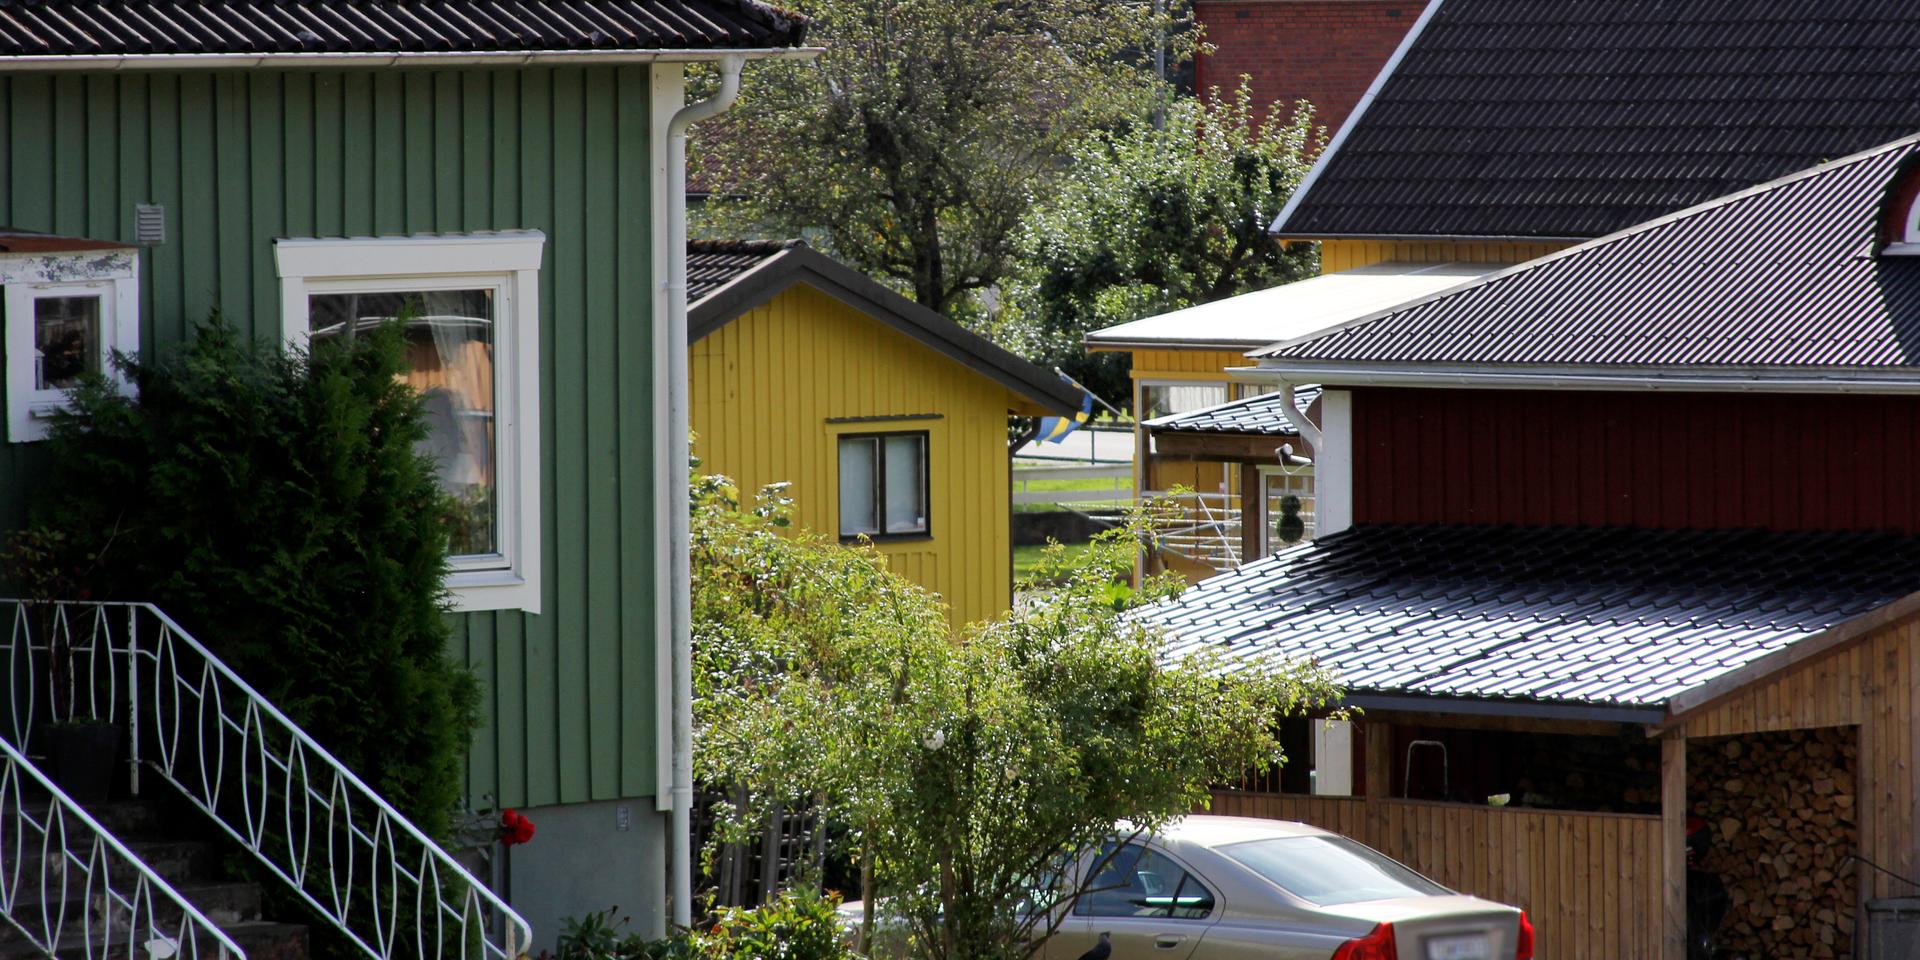 En progressiv fastighetsskatt baserad på marknadsvärde, som Partilles arbetarkommun vill se, kan bli ett hårt slag för husägare, menar Villaägarnas riksförbund.